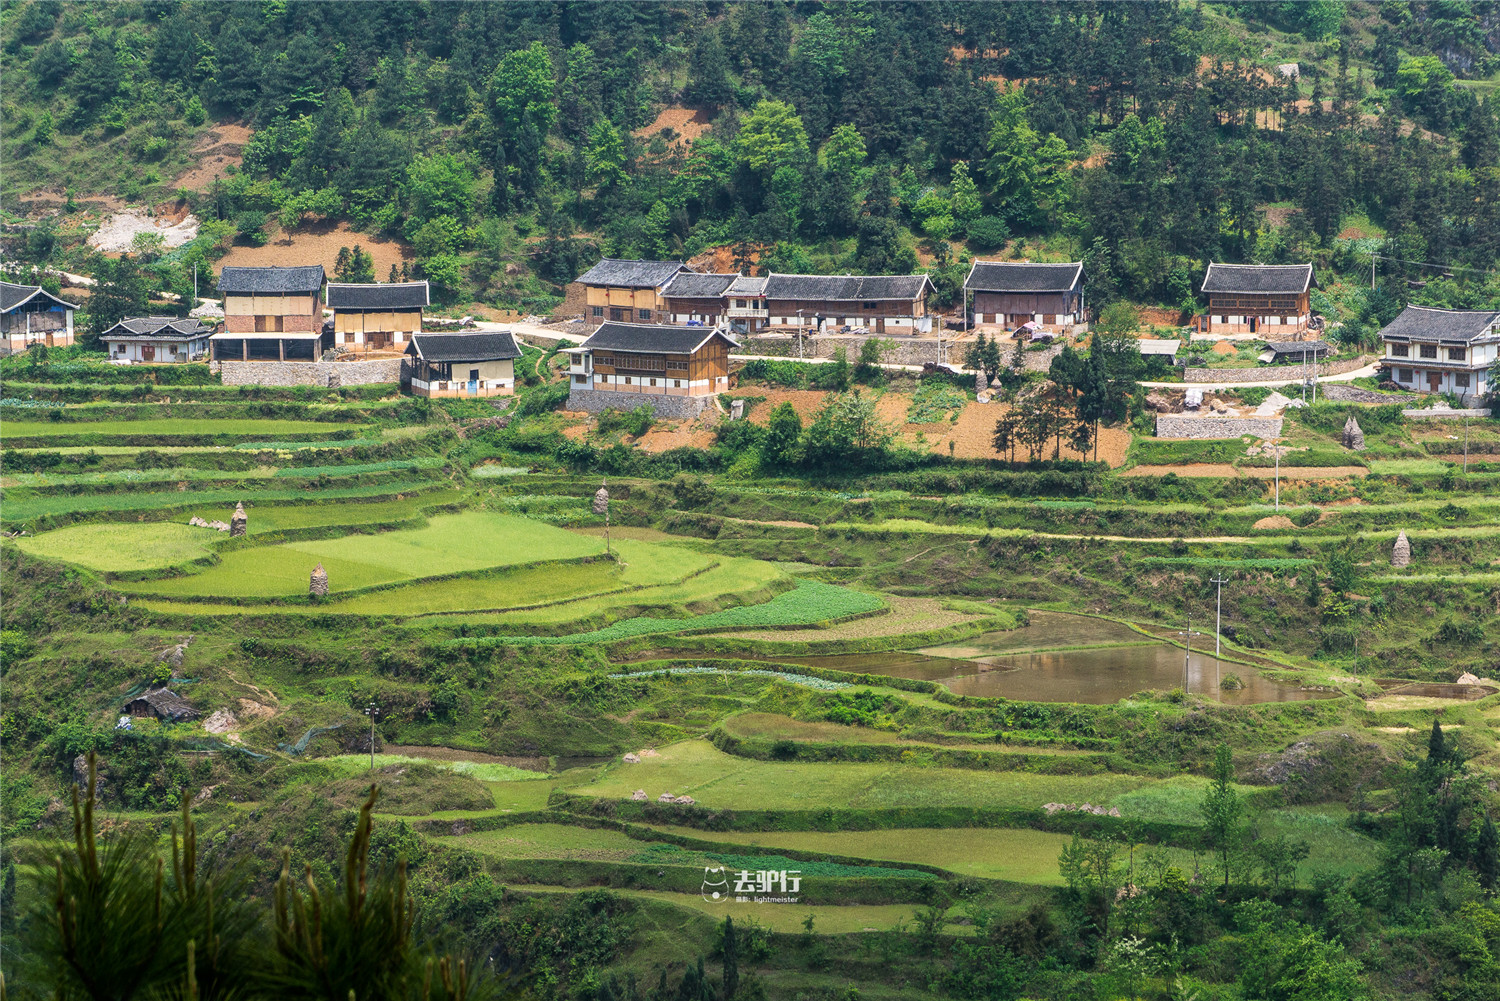 原创贵州有座苗族村:祖辈把大山挖成田,如今村民把游客带回家看田